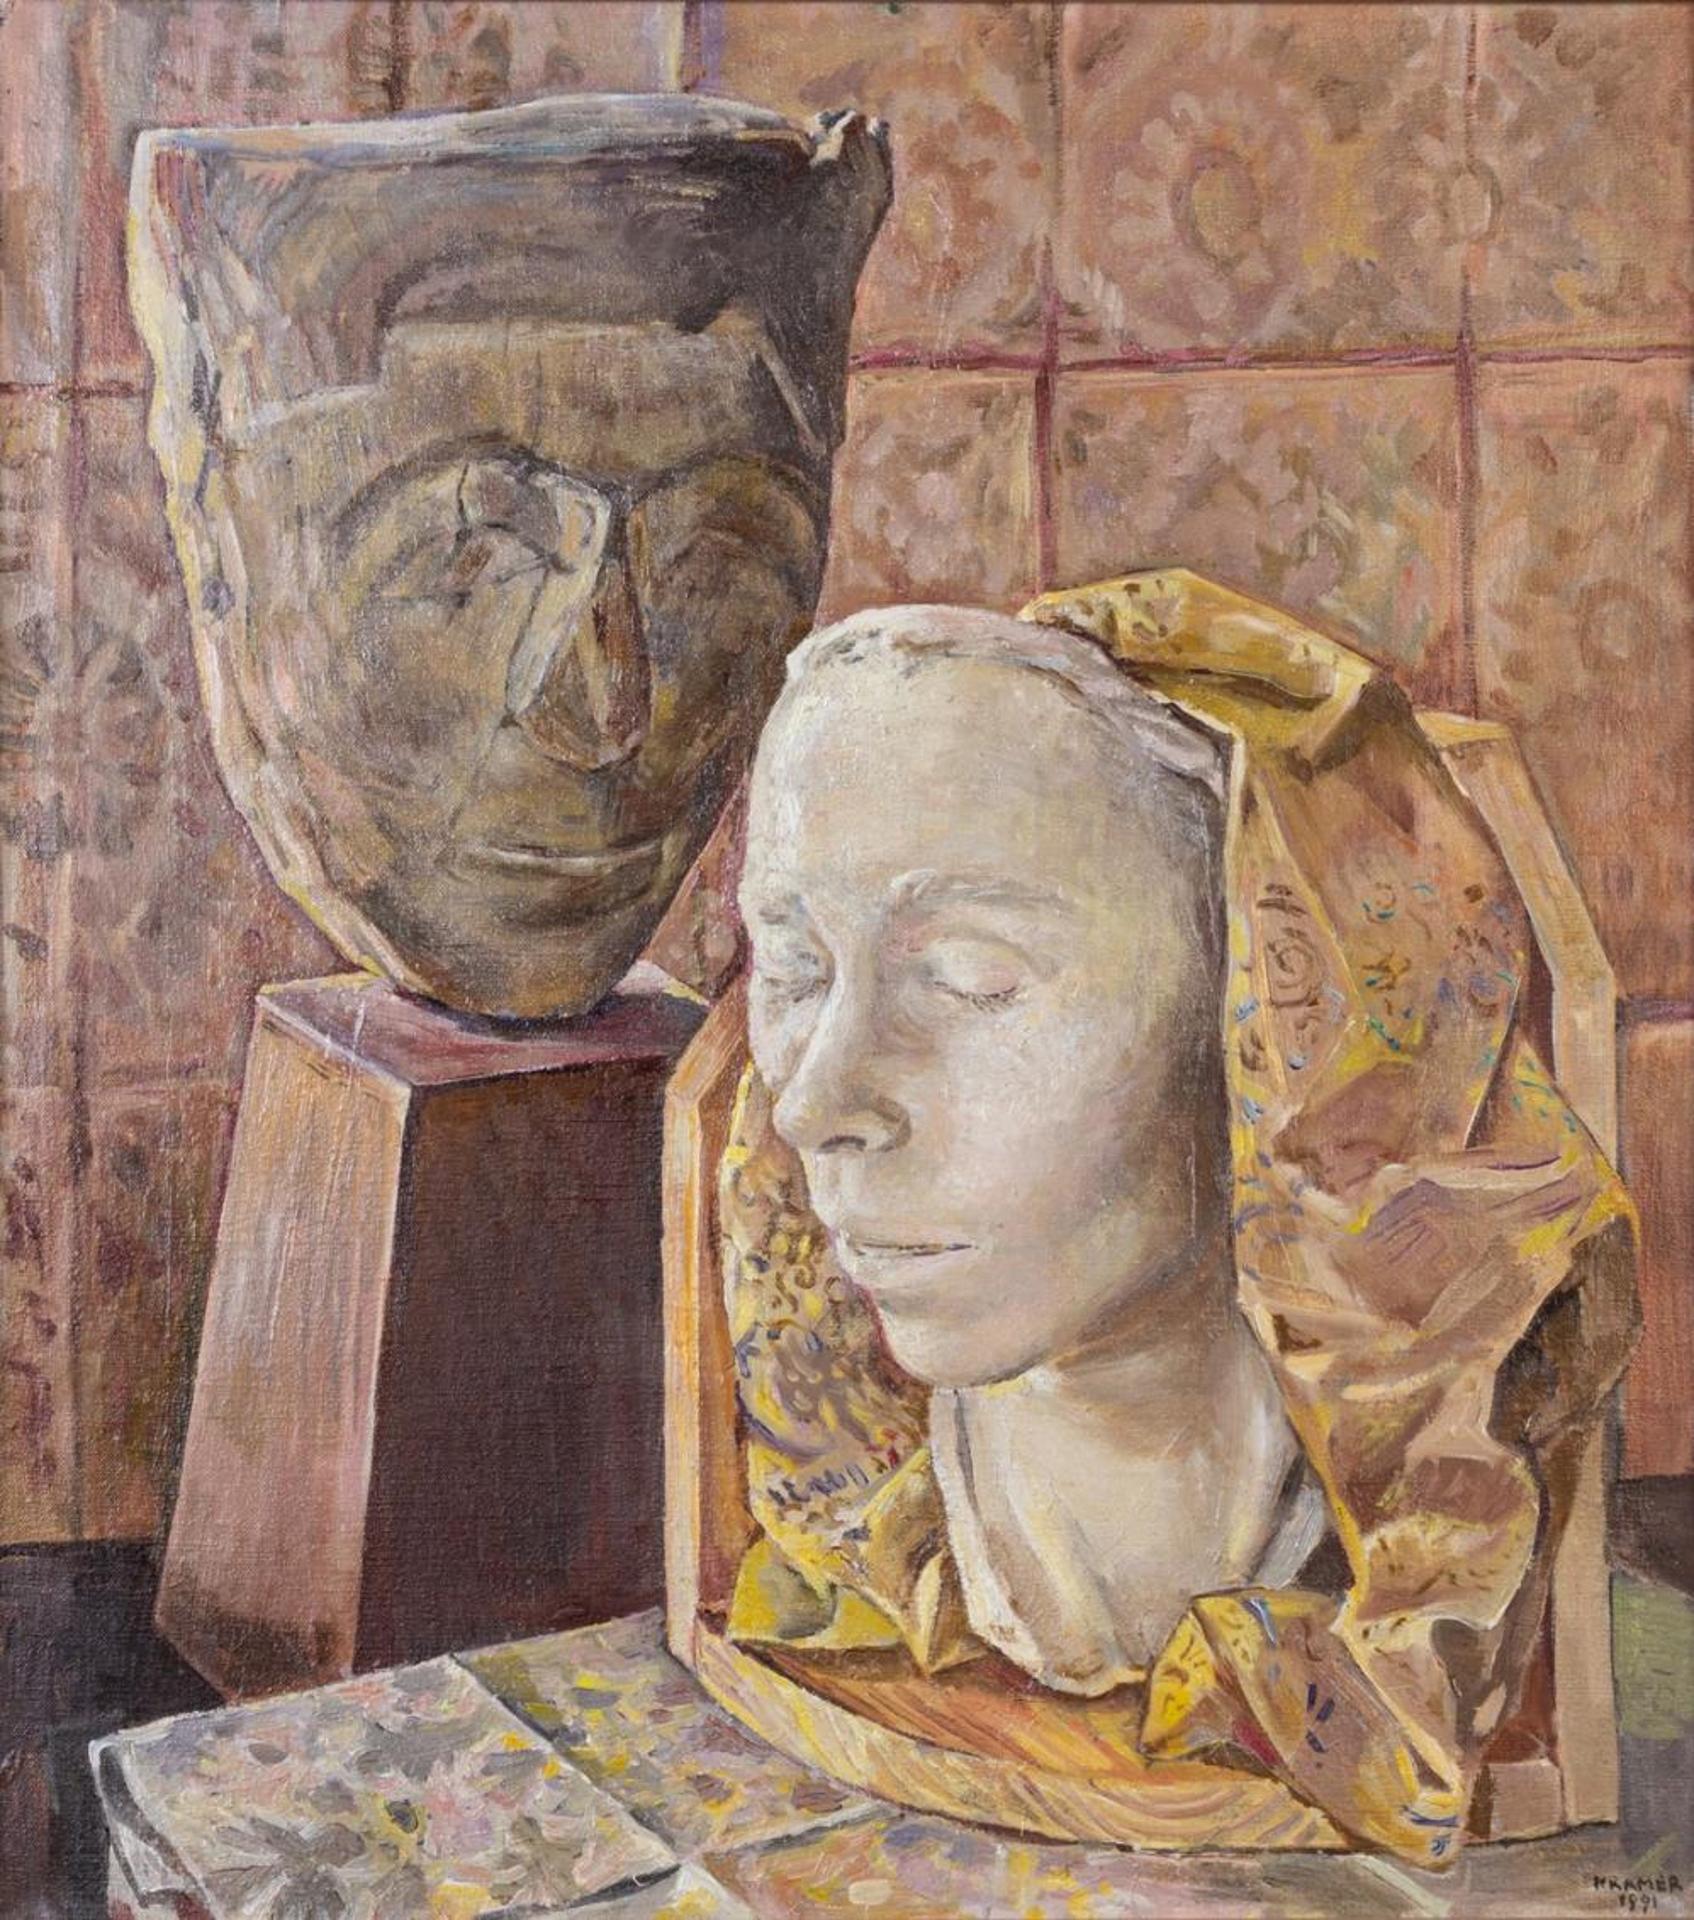 Edith Kramer Austrian (1916-2014) - Death Mask and Egyptian Head